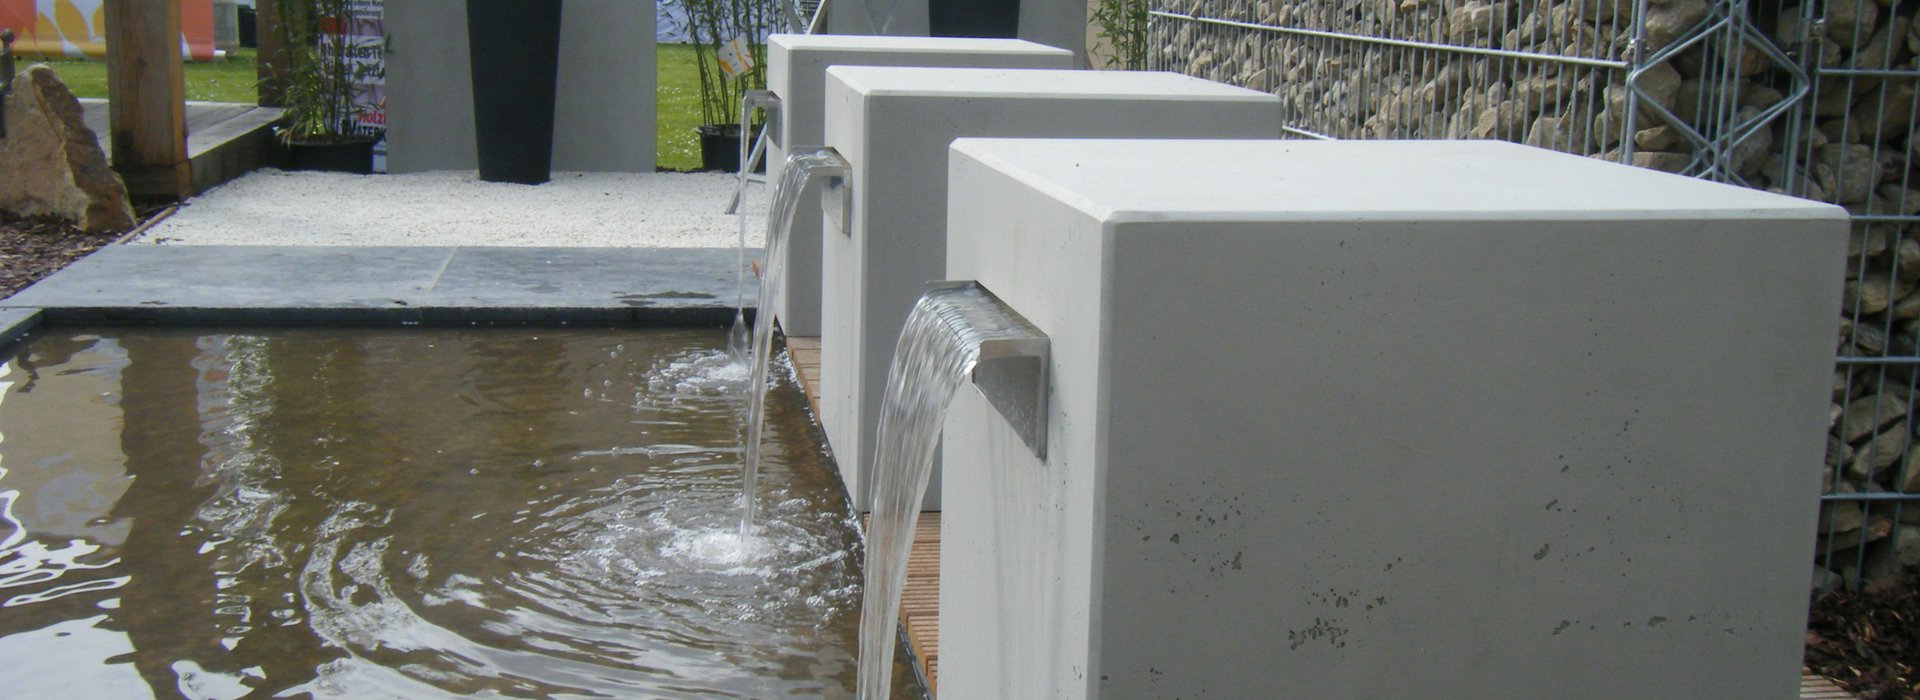 Wasserspeier aus imi-beton outdoor